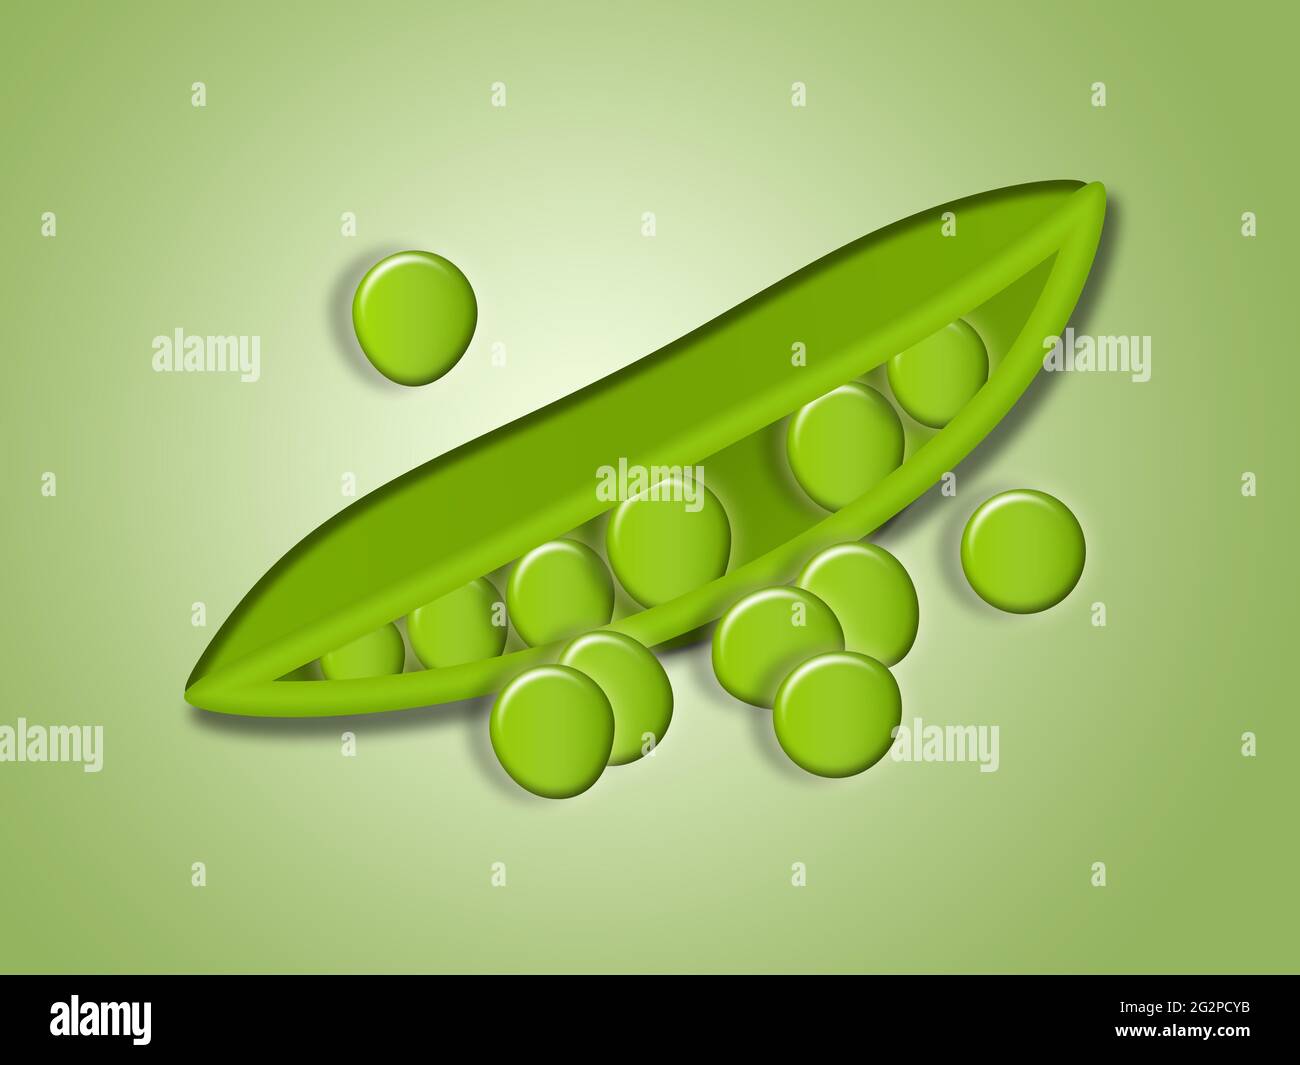 Illustration von Peas. Diese Abbildung ist Teil einer großen Sammlung von verschiedenen Gemüsesorten. Stockfoto